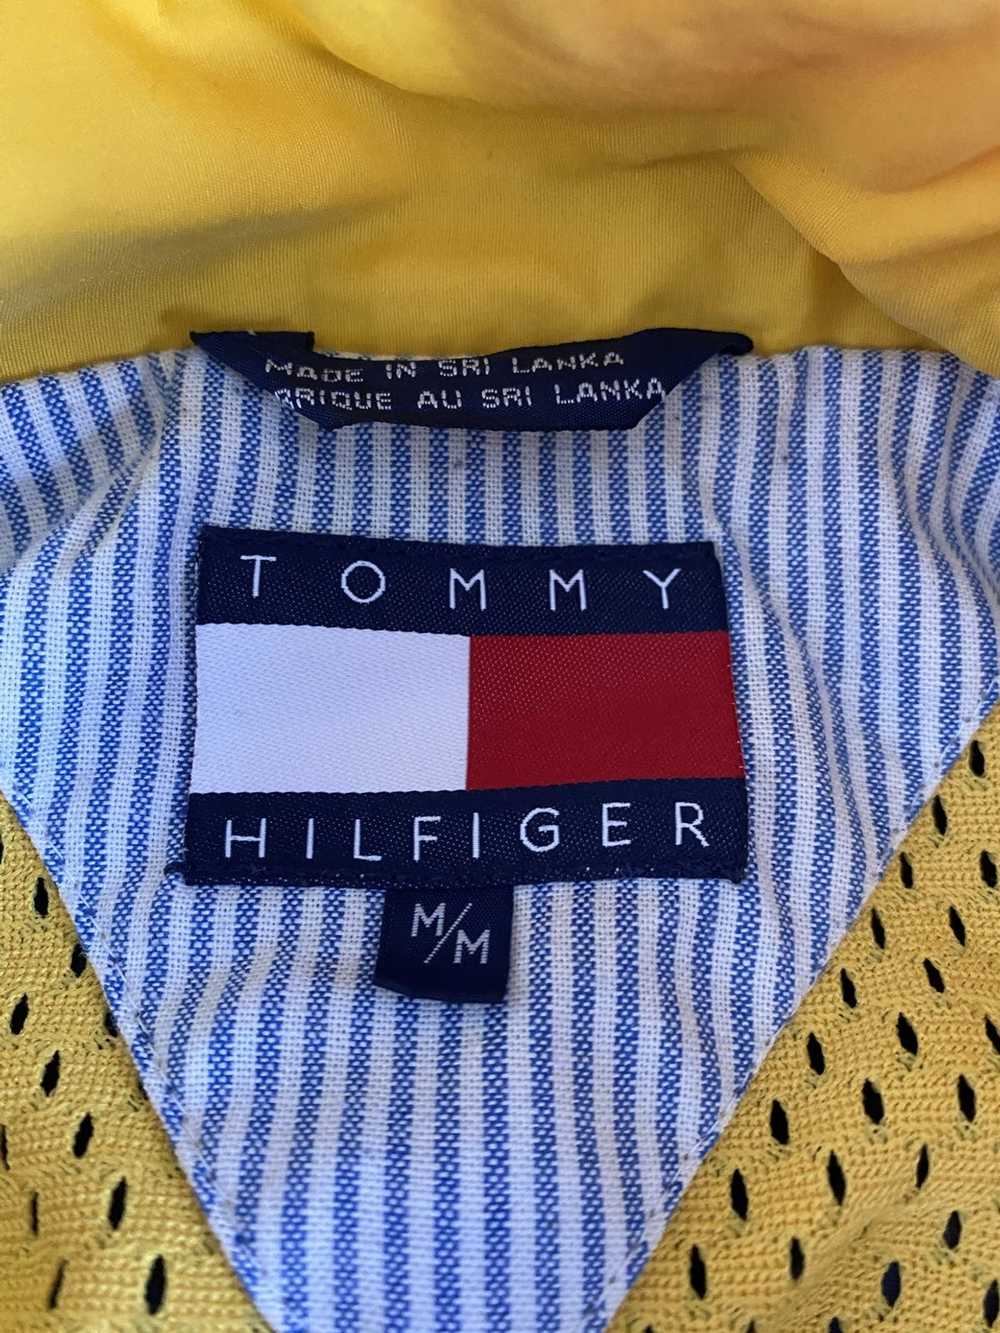 Tommy Hilfiger Tommy Hilfiger logo Jacket - image 5